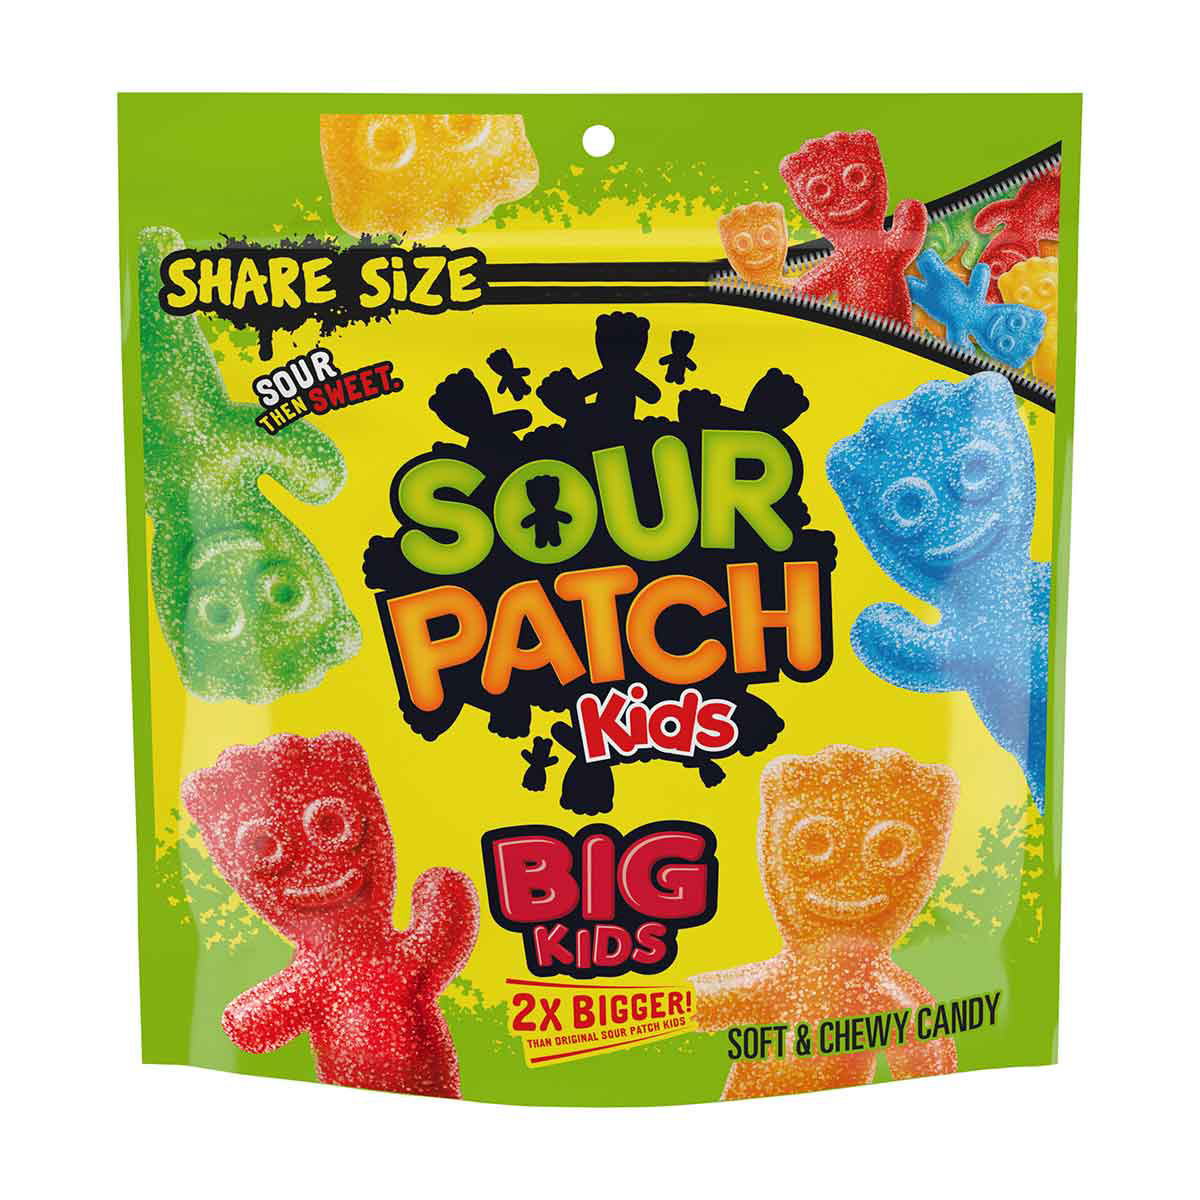 Sour Patch Kids Big Kids Soft & Chewy Candy, 12 oz